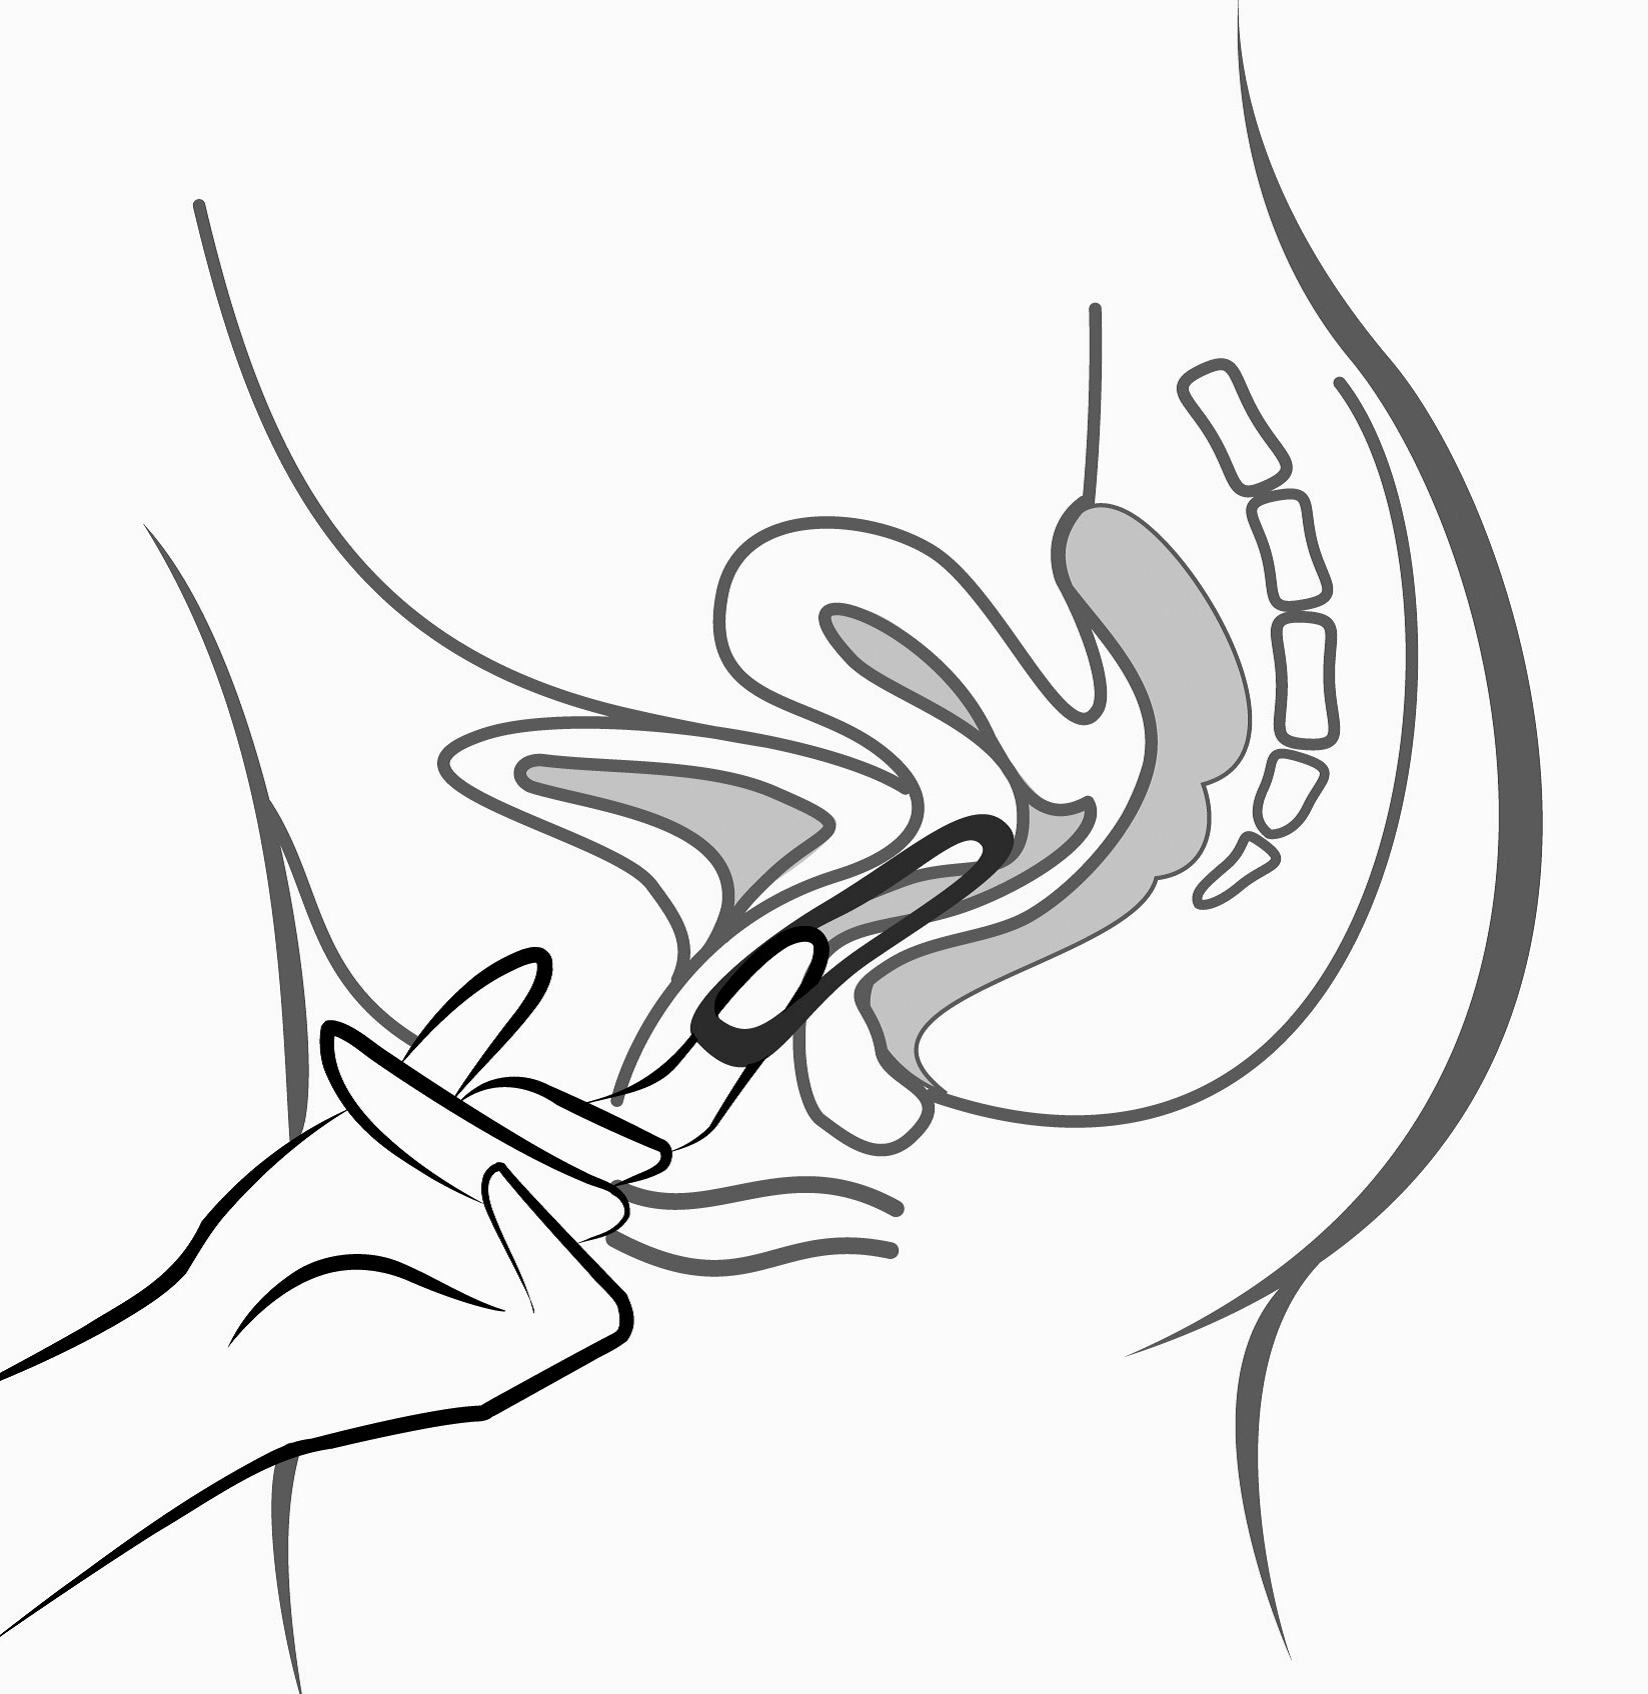 Bild 5: Ornibel kan tas ut genom att kroka fast pekfingret i nederkanten eller genom att fatta tag i kanten på ringen med pek- och långfingret och dra ut den